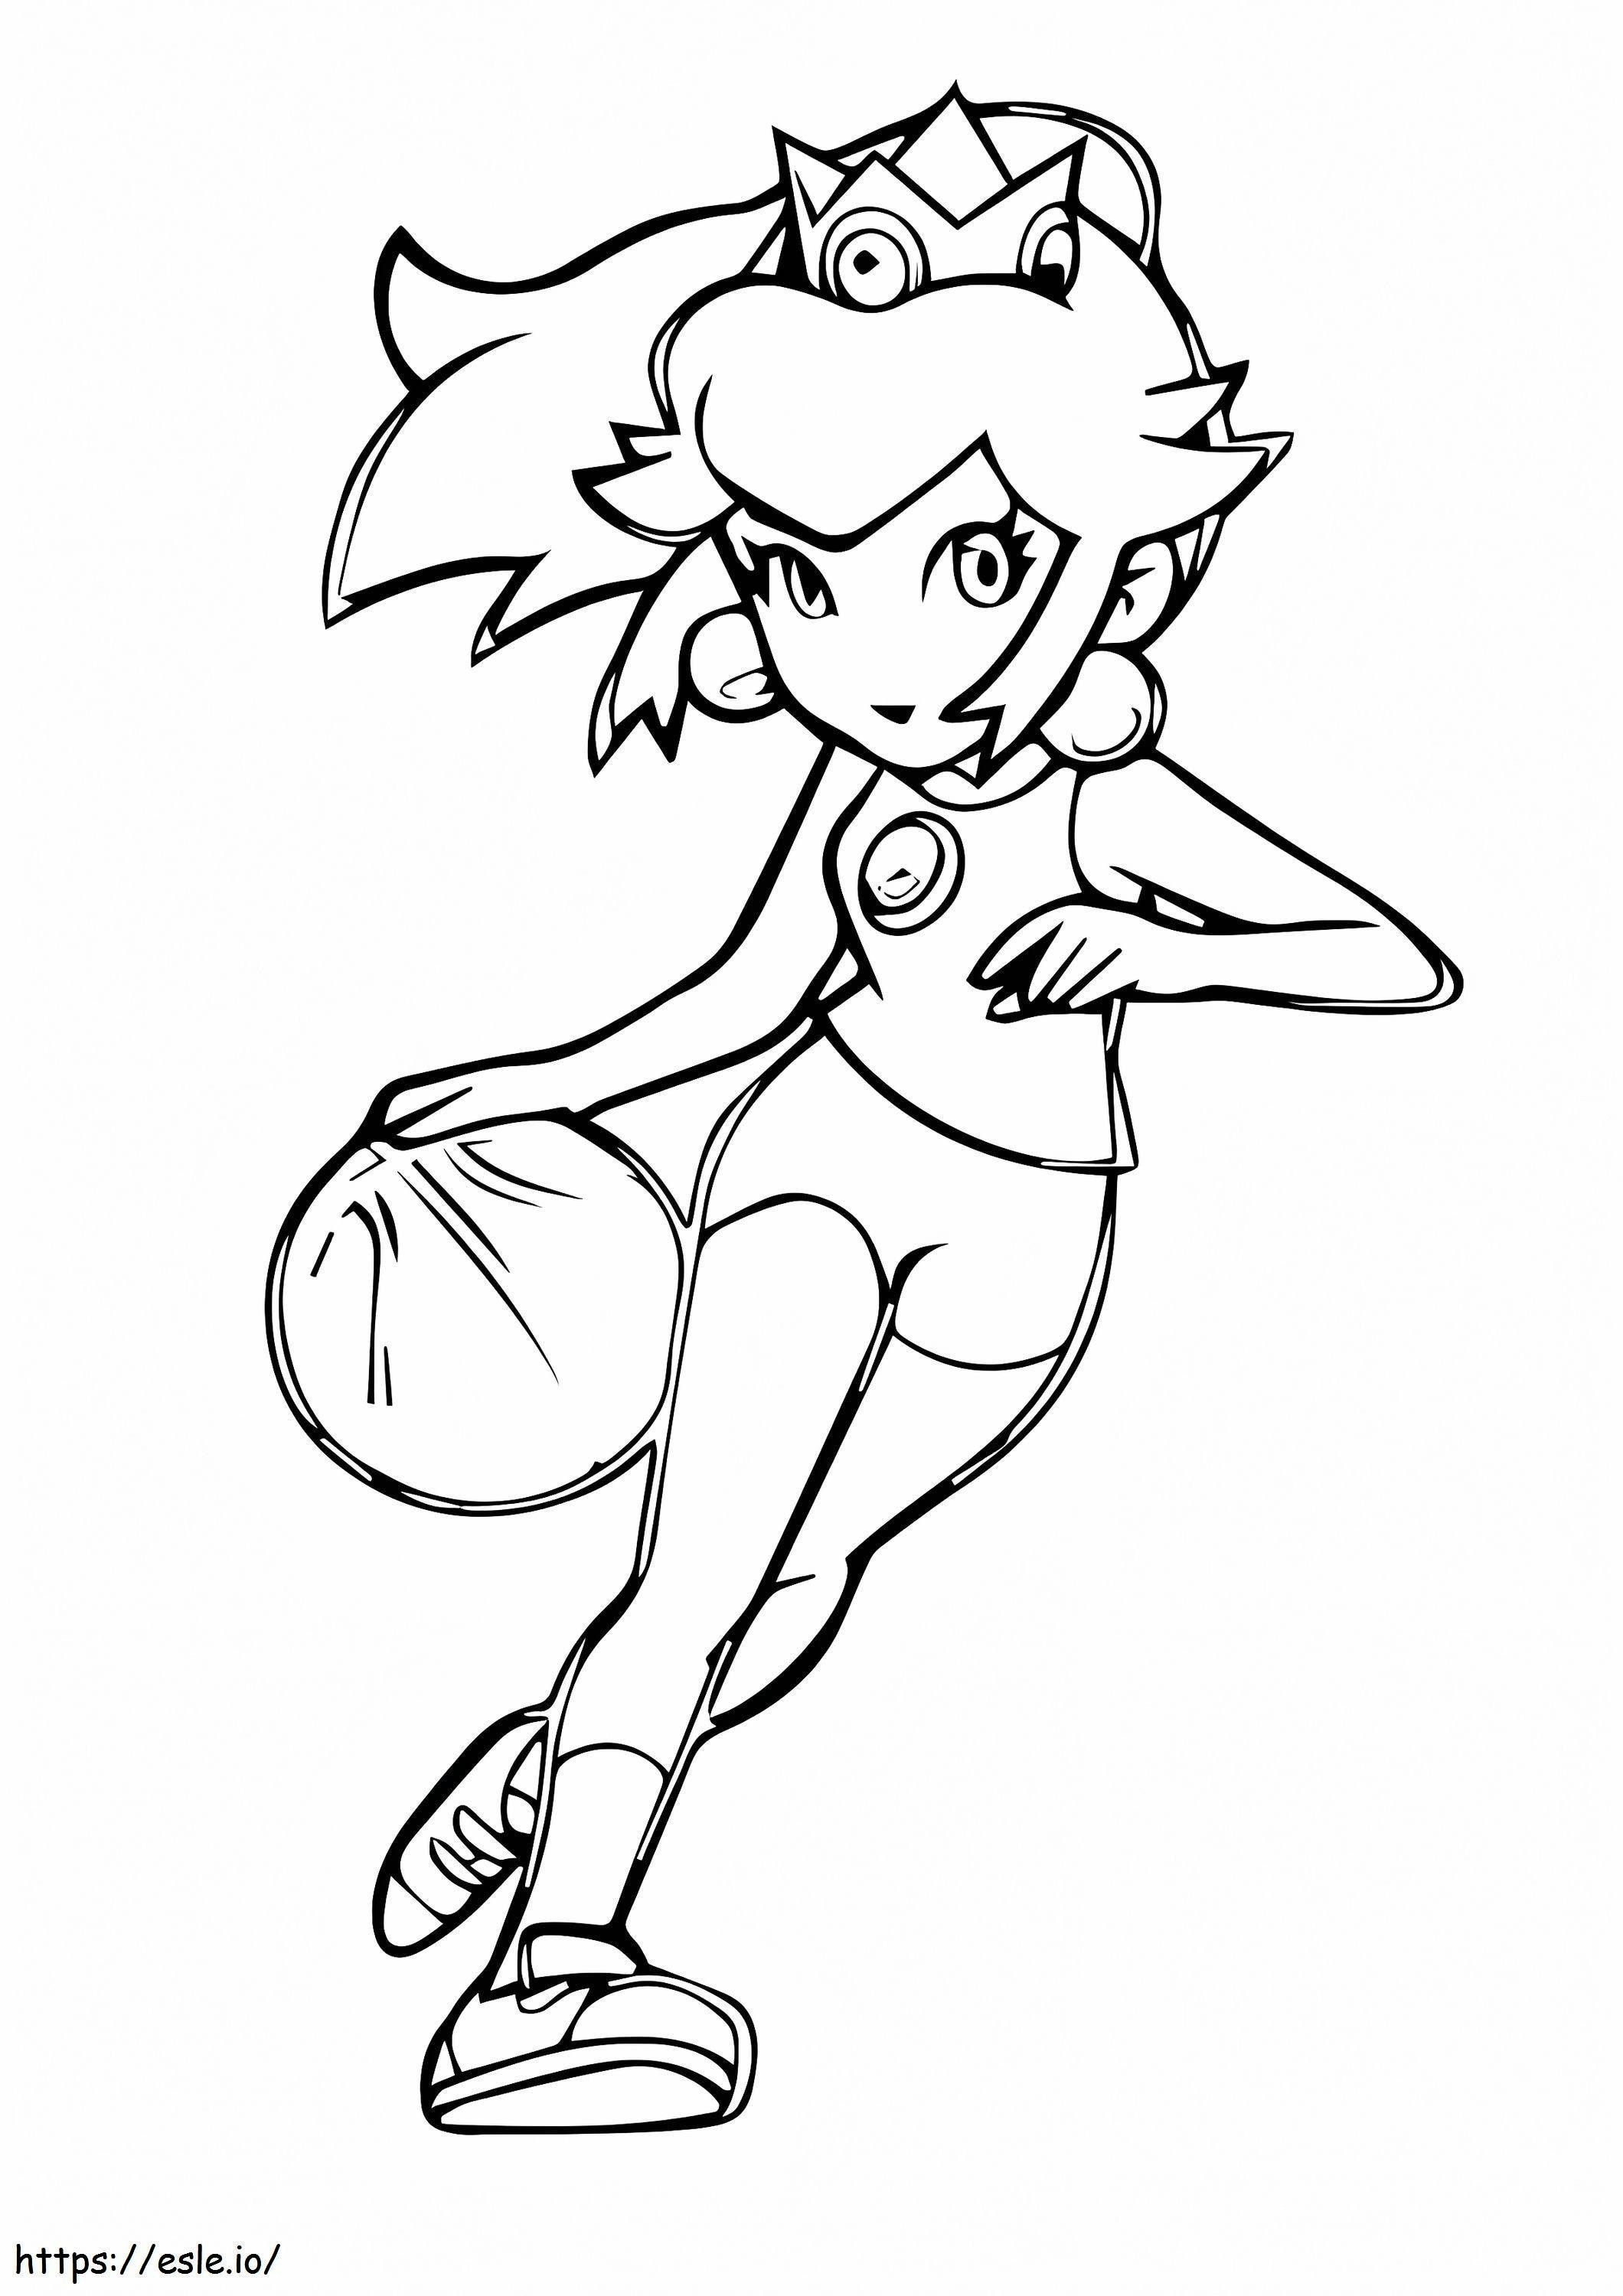 Princesa Peach jugando baloncesto para colorear